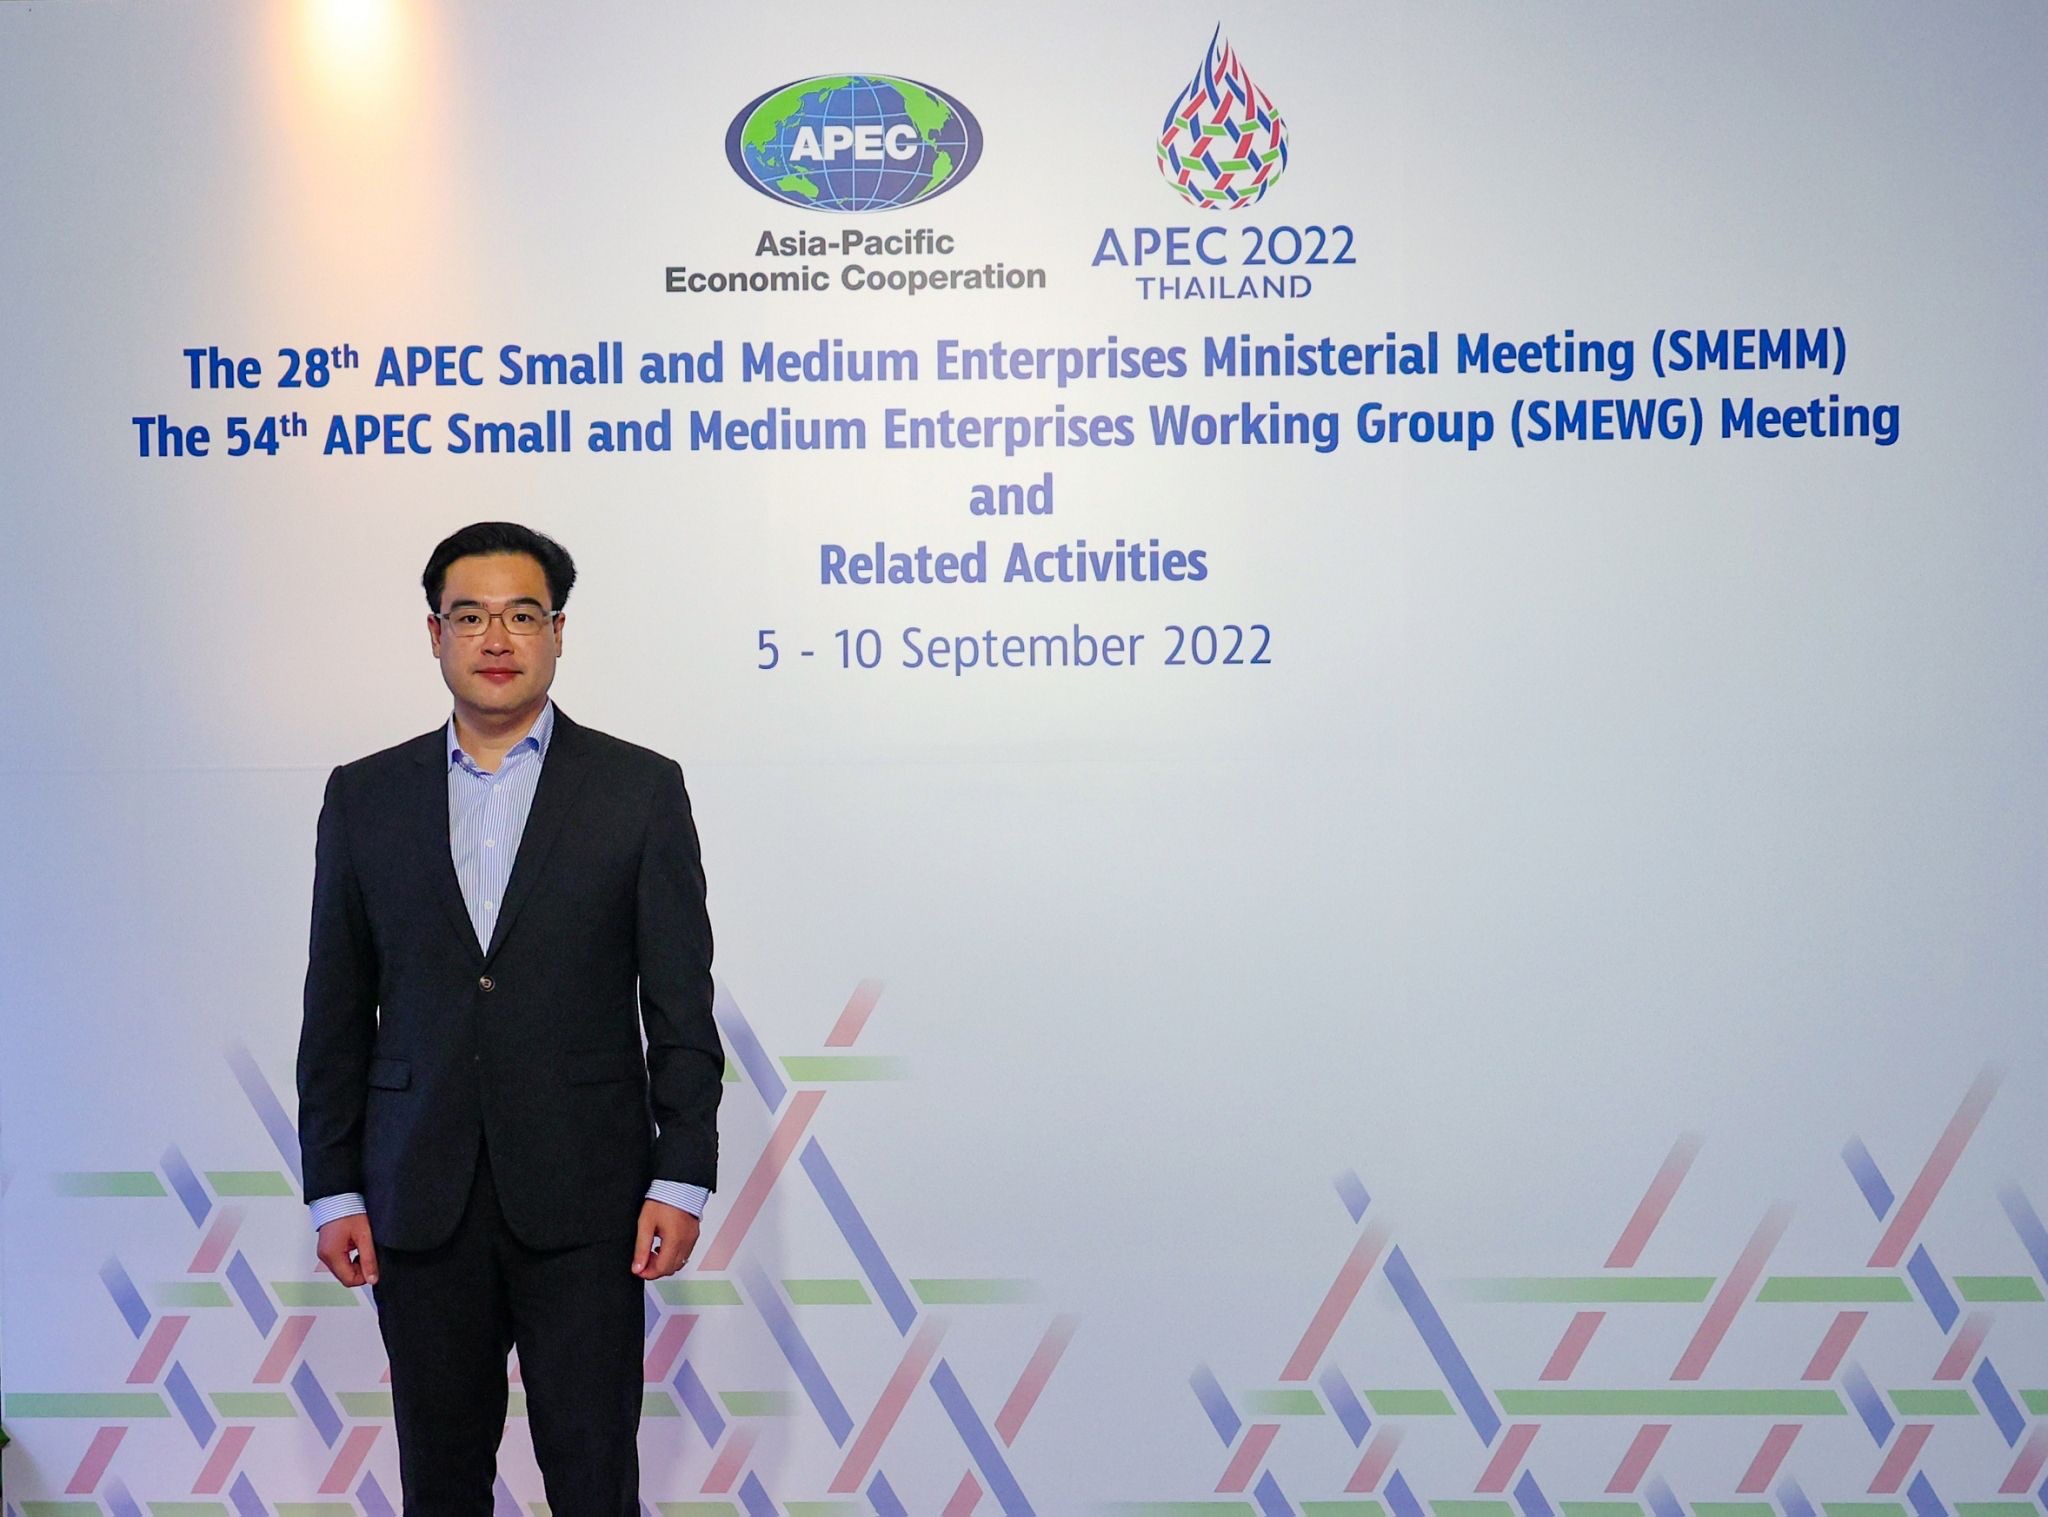 ธพว. ร่วมงาน APEC SME ชูโมเดล “เติมทุนคู่พัฒนา” หนุนเอสเอ็มอีไทย ก้าวสู่ BCG Model ยกระดับธุรกิจเติบโตยั่งยืน